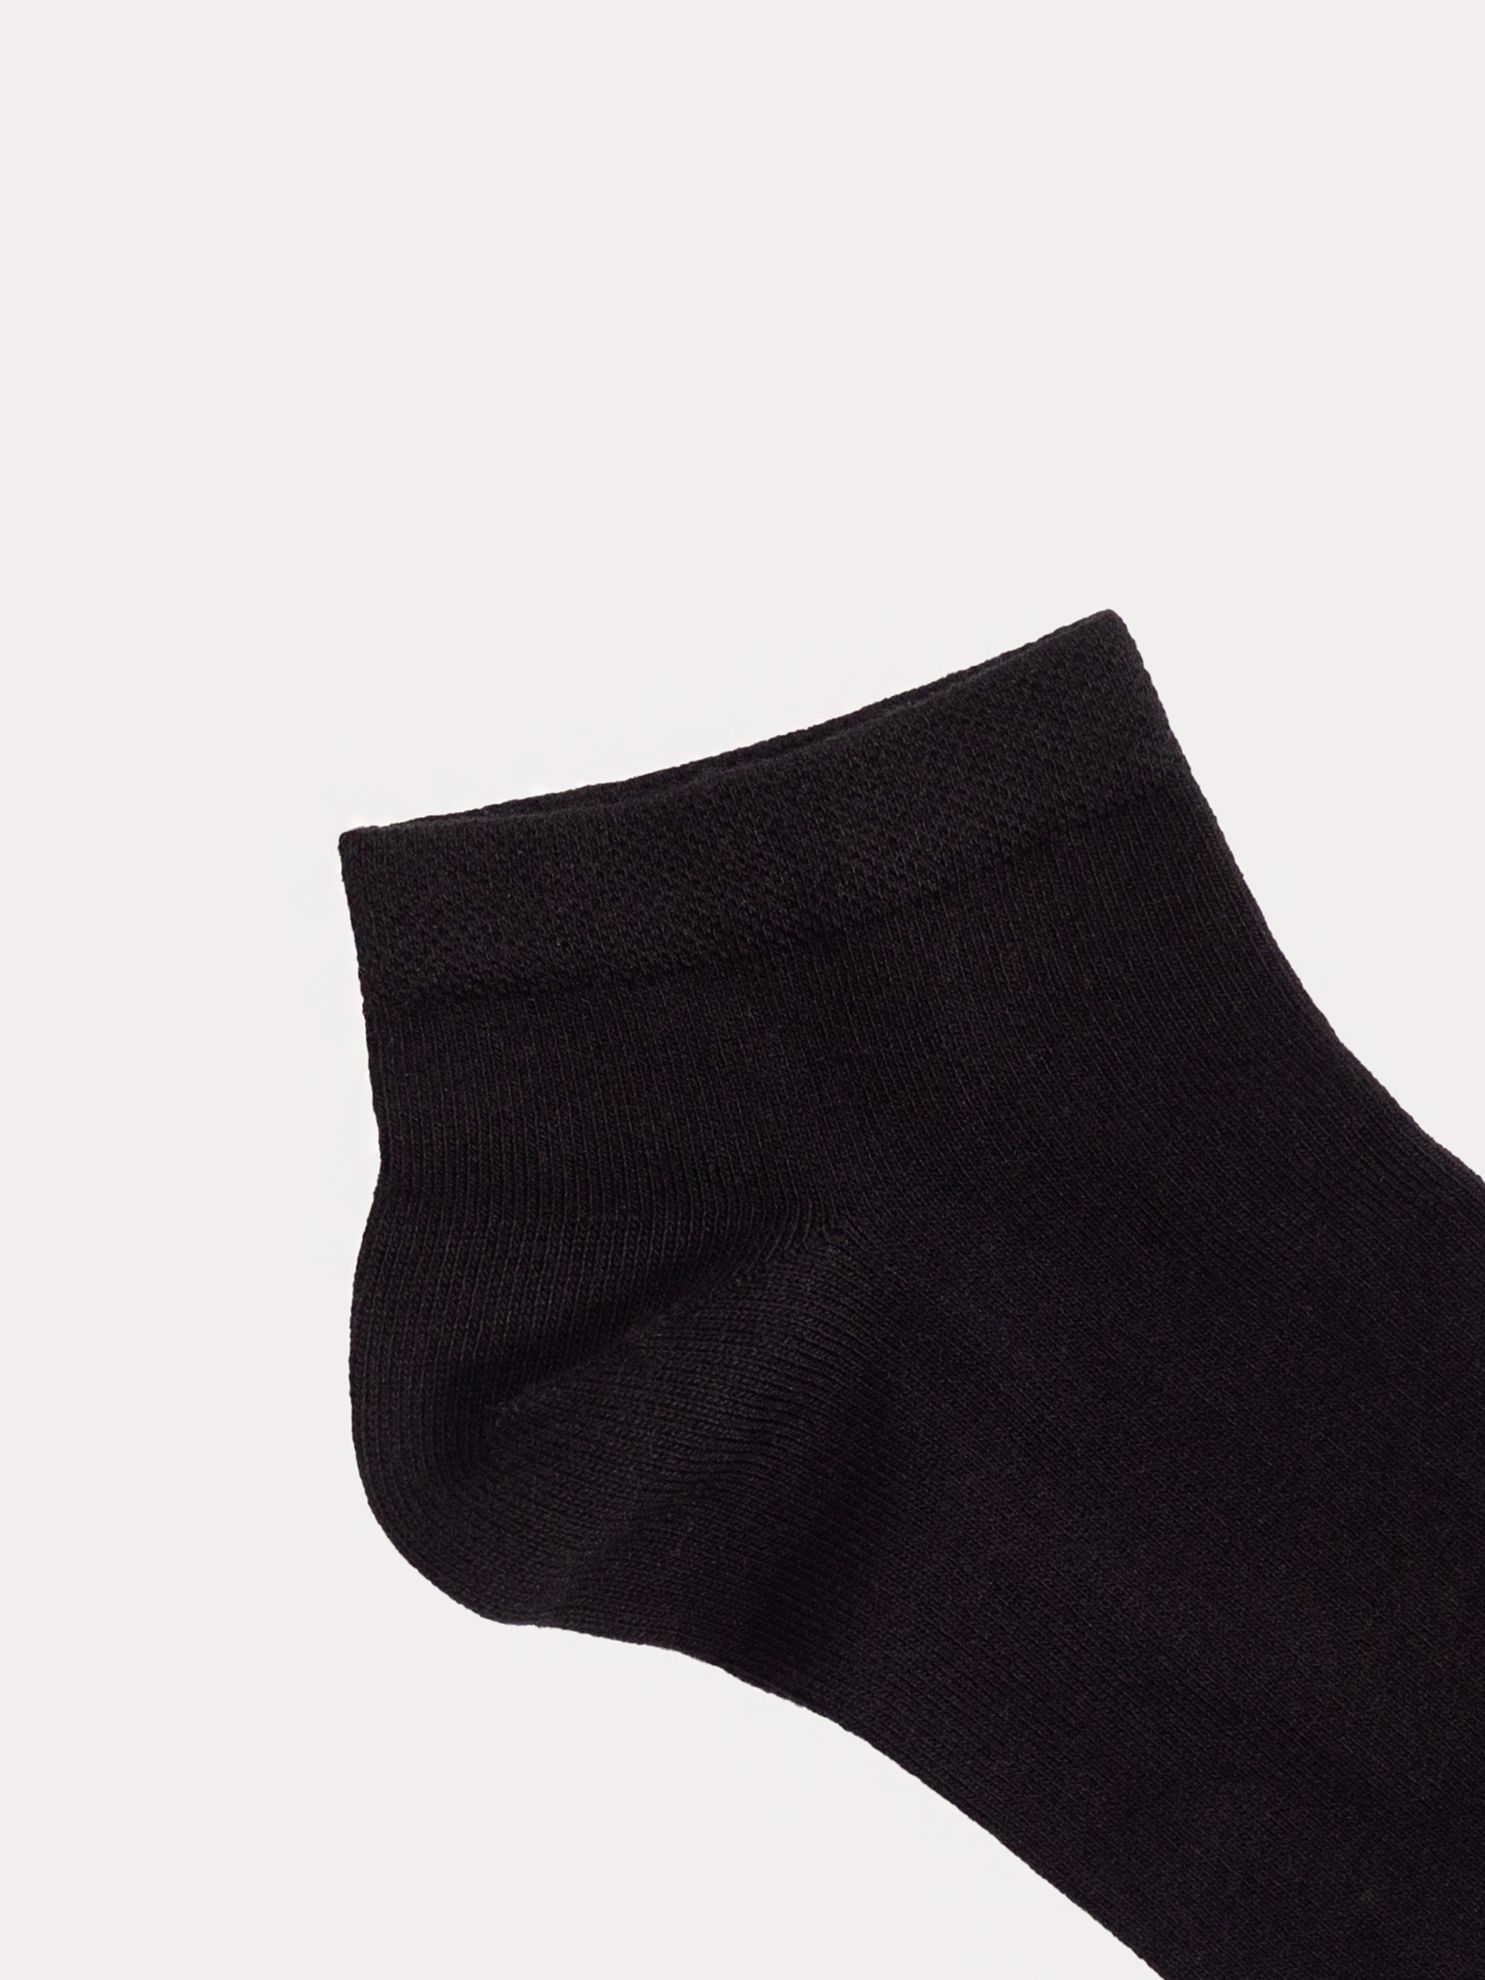 Karaca Erkek Patik Çorap-Siyah. ürün görseli